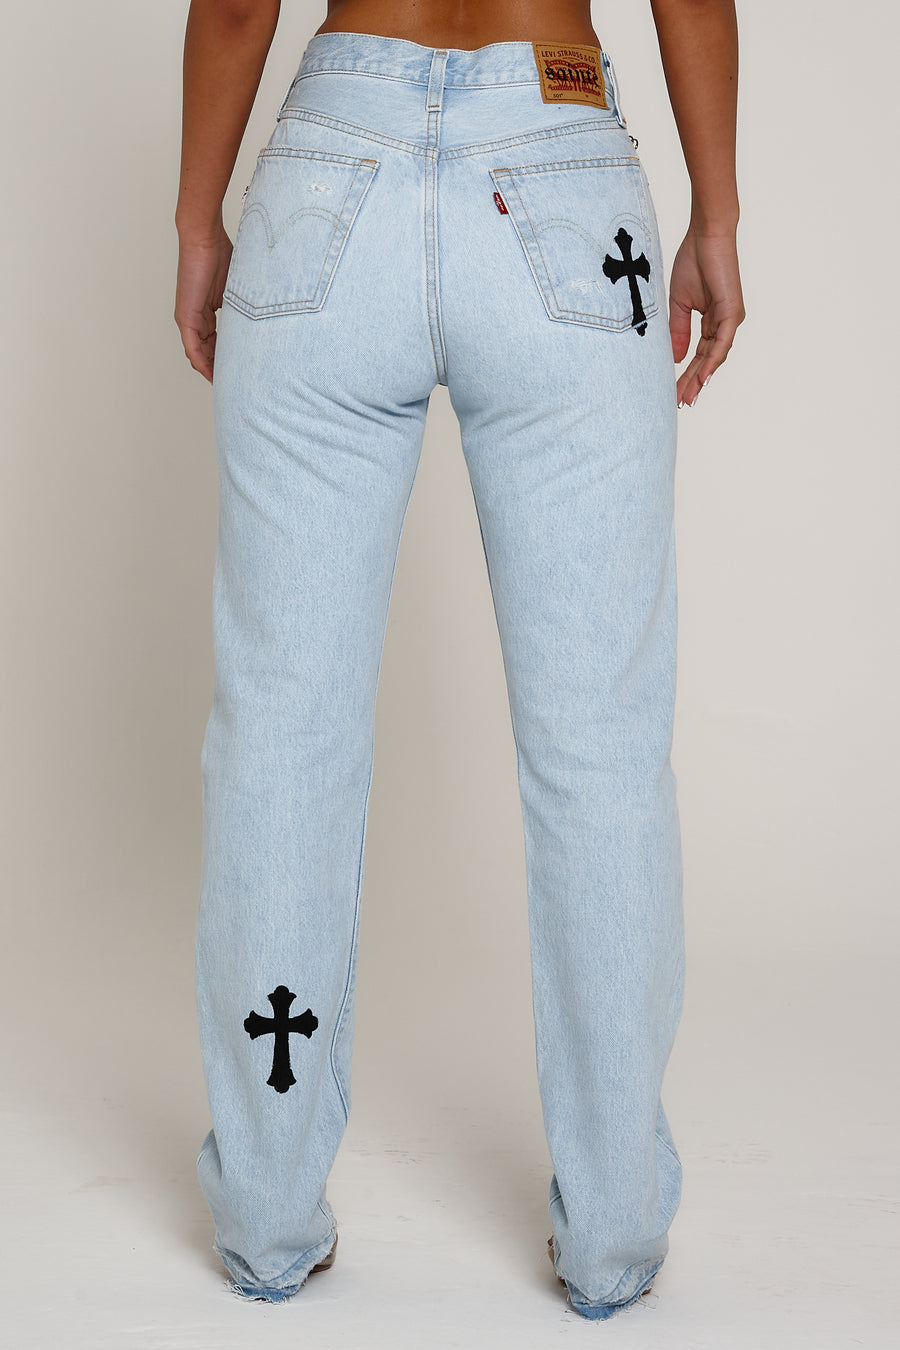 Cross Jean